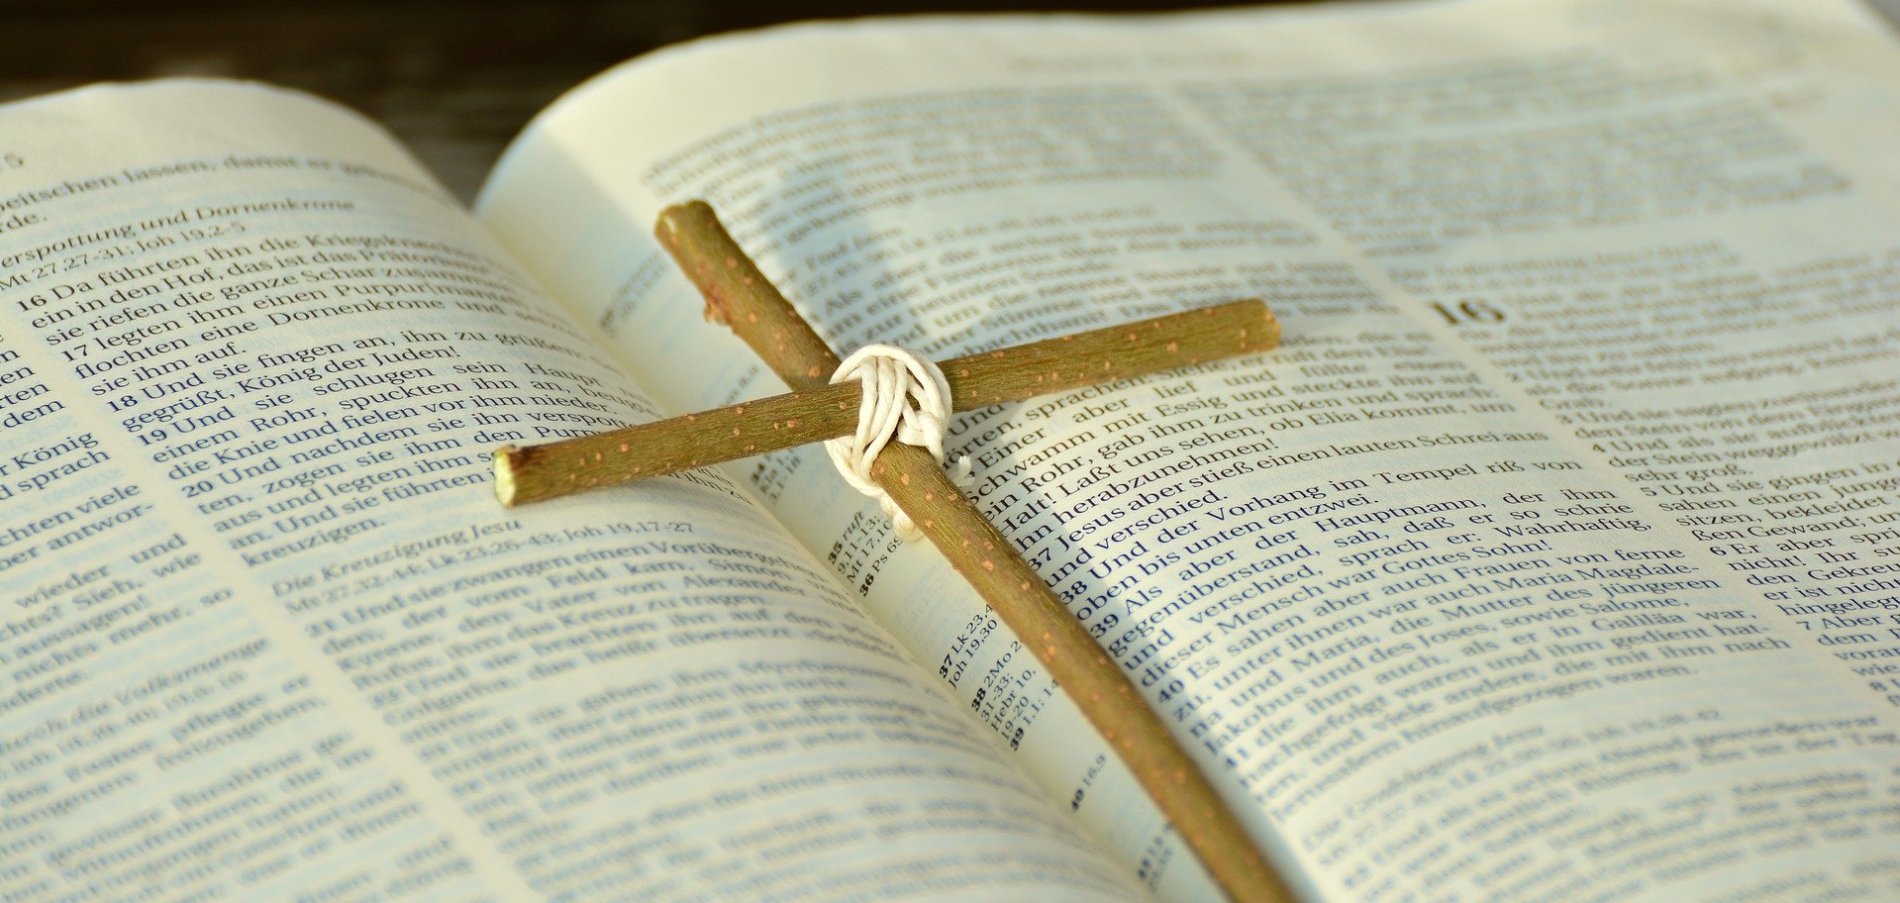 aufgeschlagene Bibel mit einem einfachen Holzkreuz aus zwei feinen Ästen darauf liegend